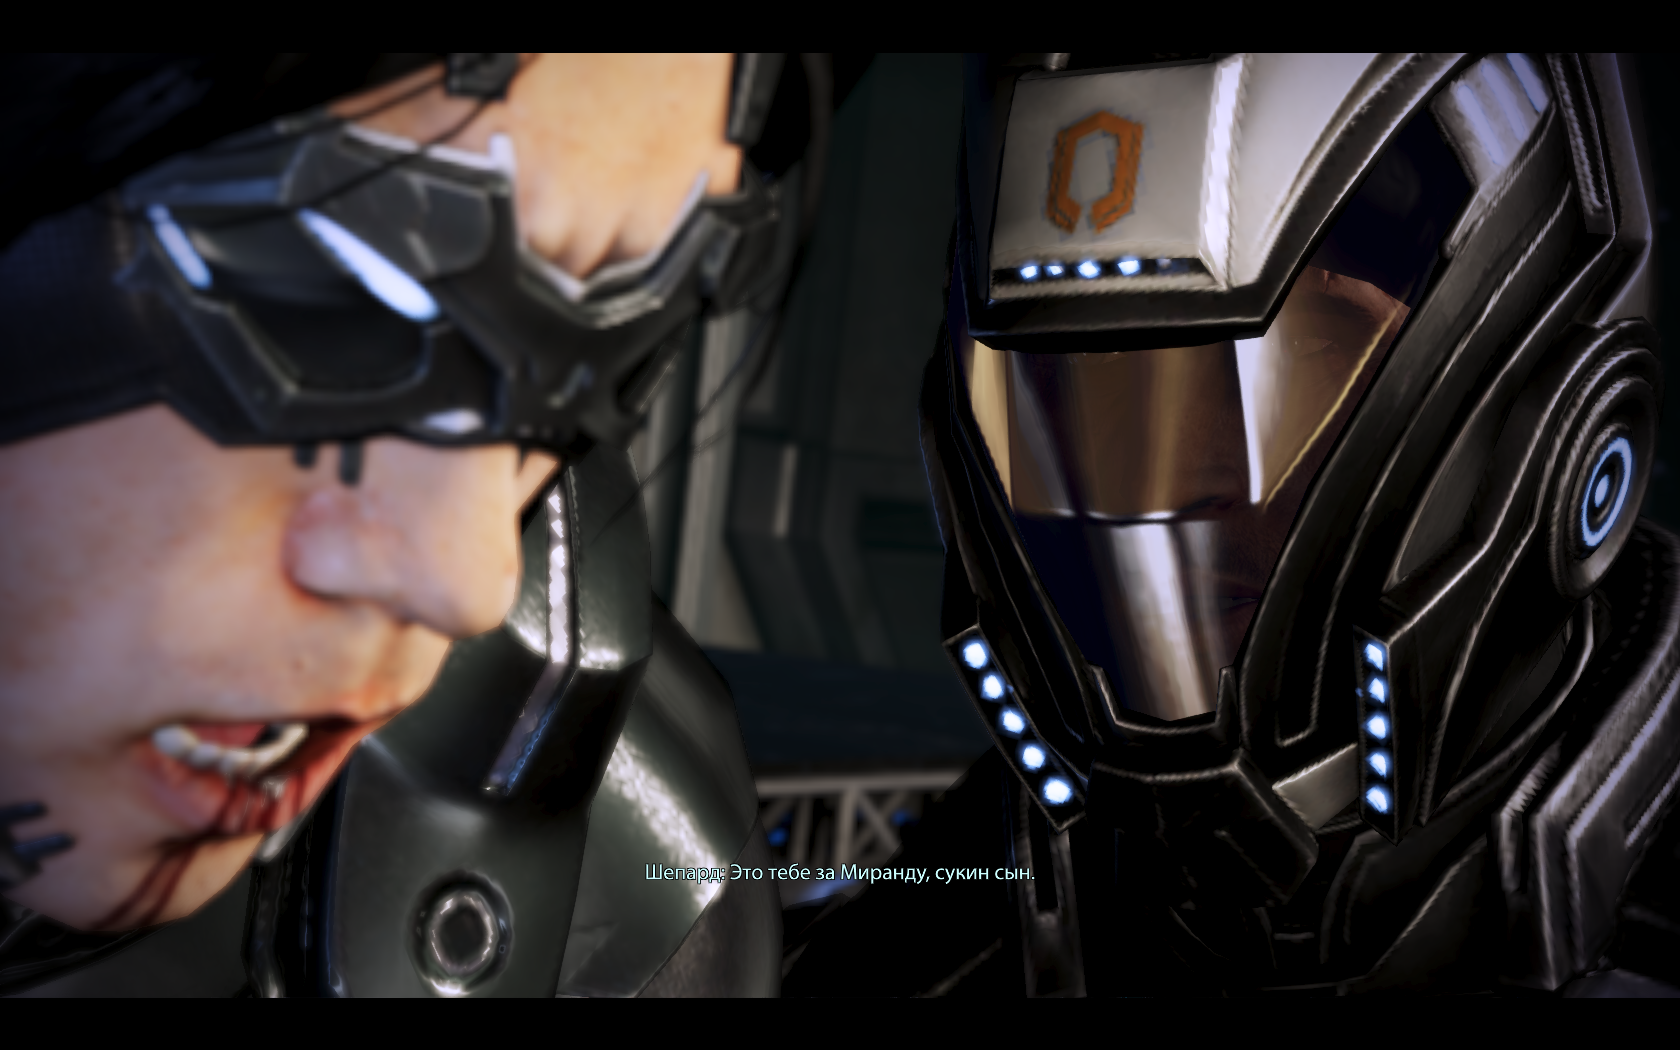 Mass Effect 3 Месть за Миранду